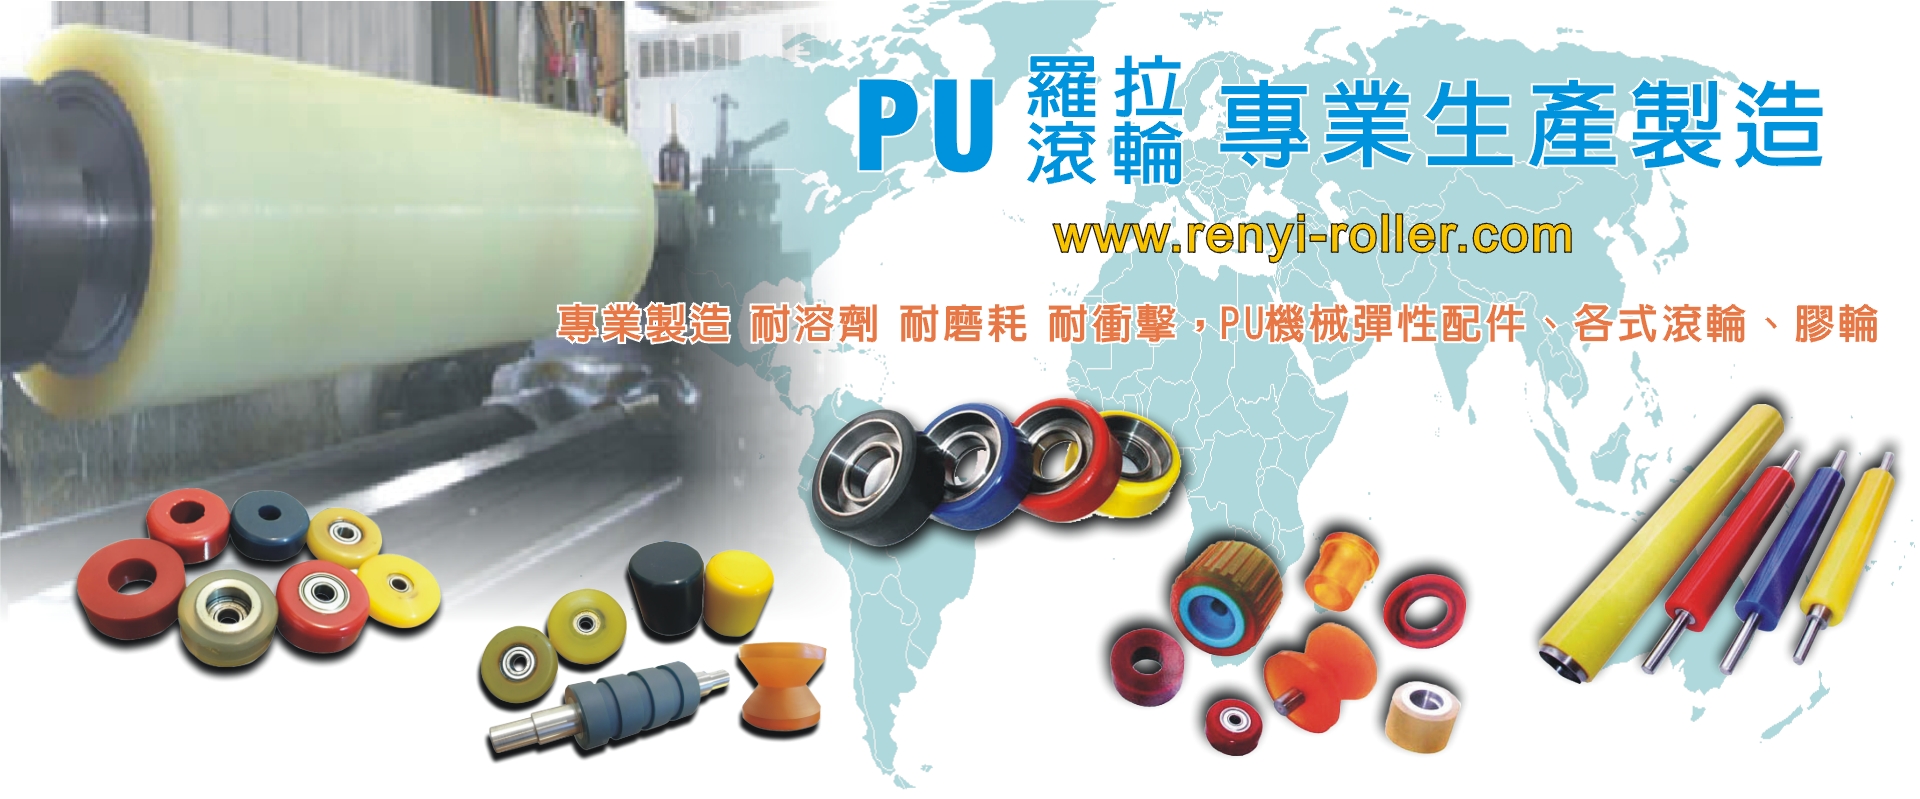 仁益膠業有限公司-PU滾輪,滾輪,膠輪,優力膠輪,橡膠滾輪